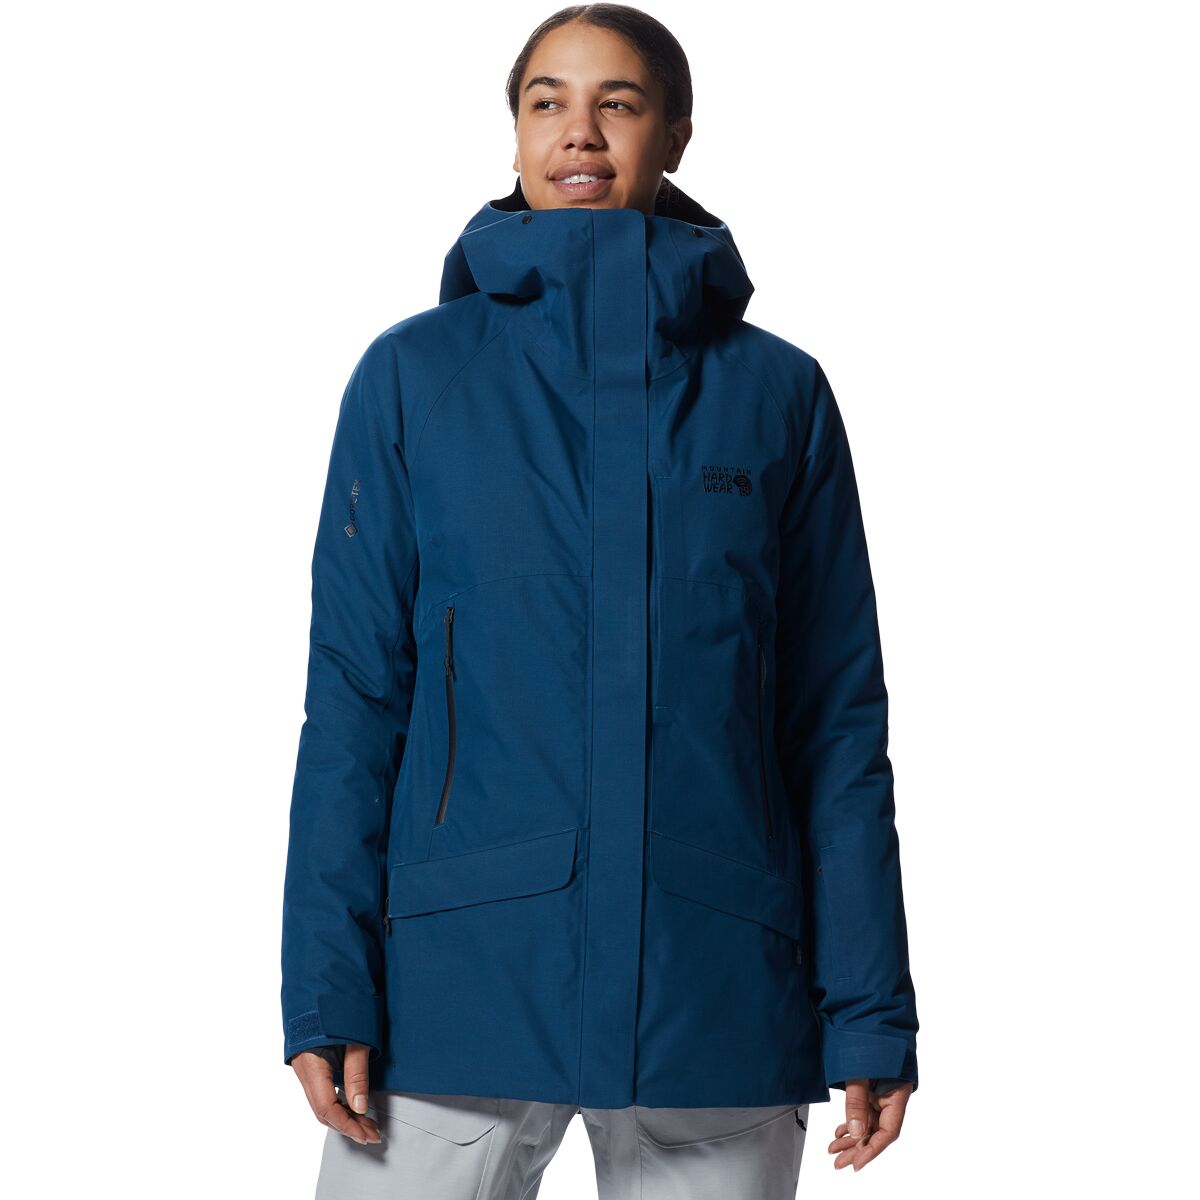 Cloudbank GORE-TEX Insulated Jacket - Women